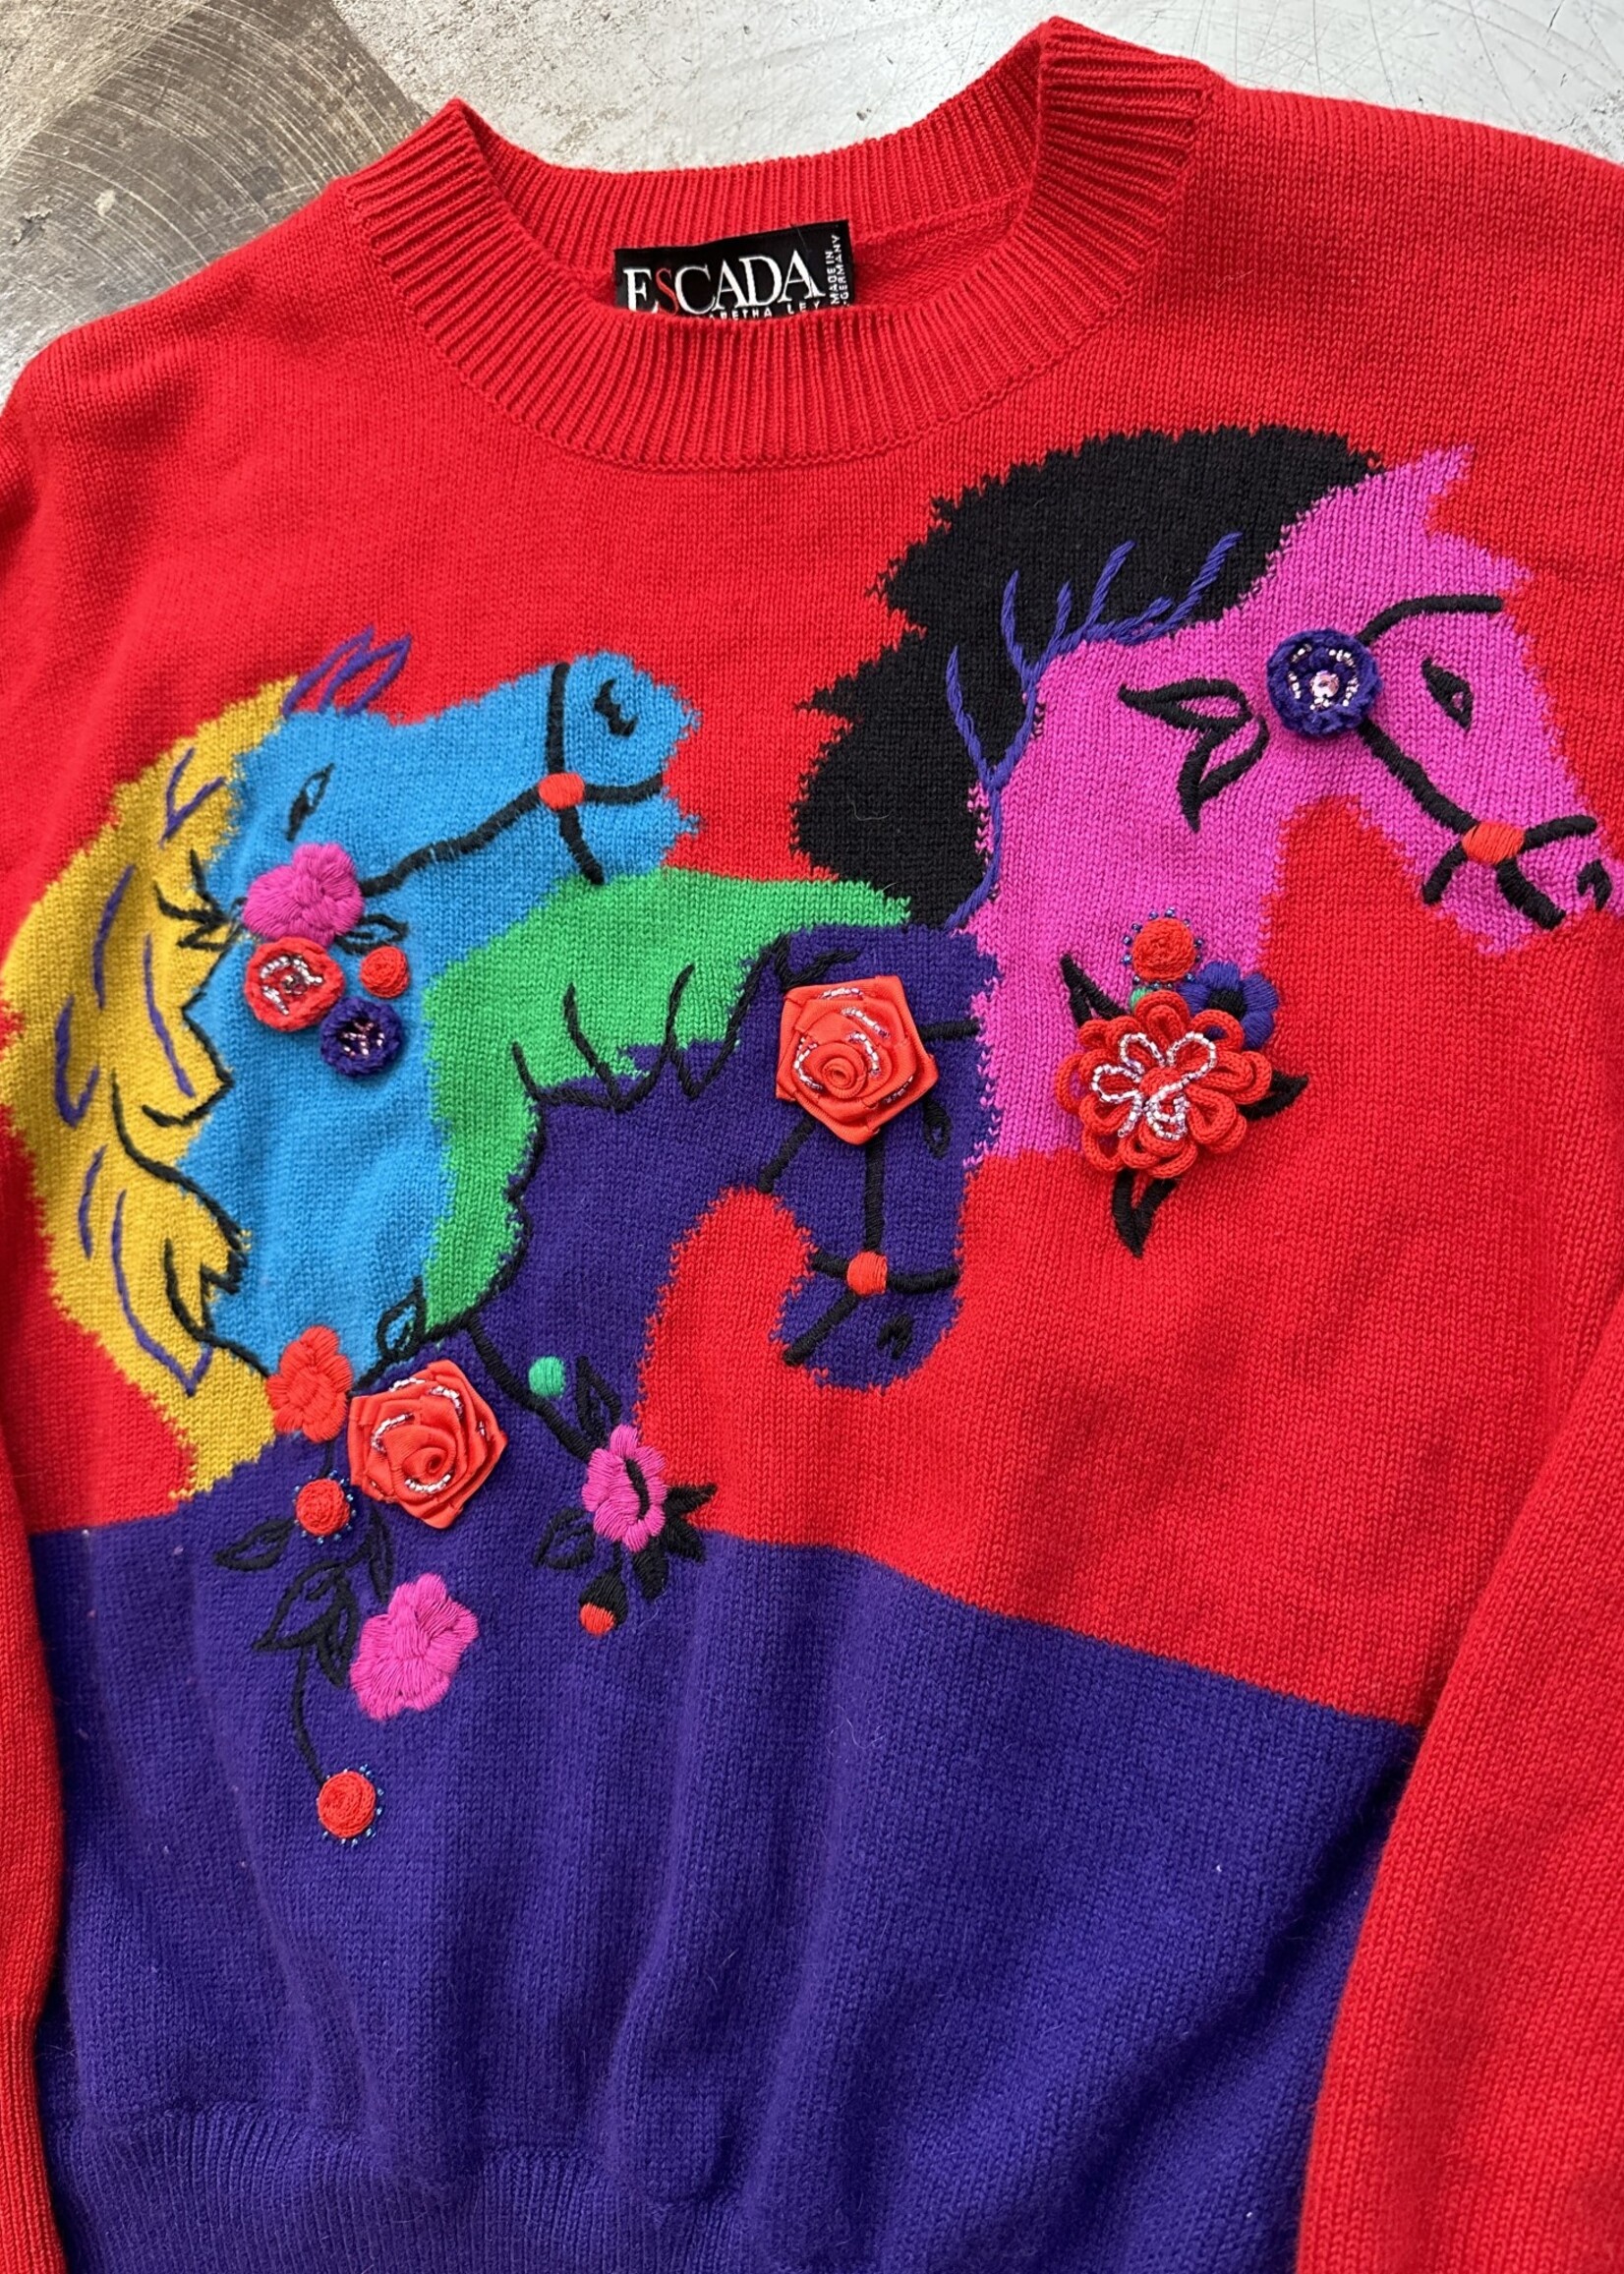 Escada Multi Color Horse Sweater L